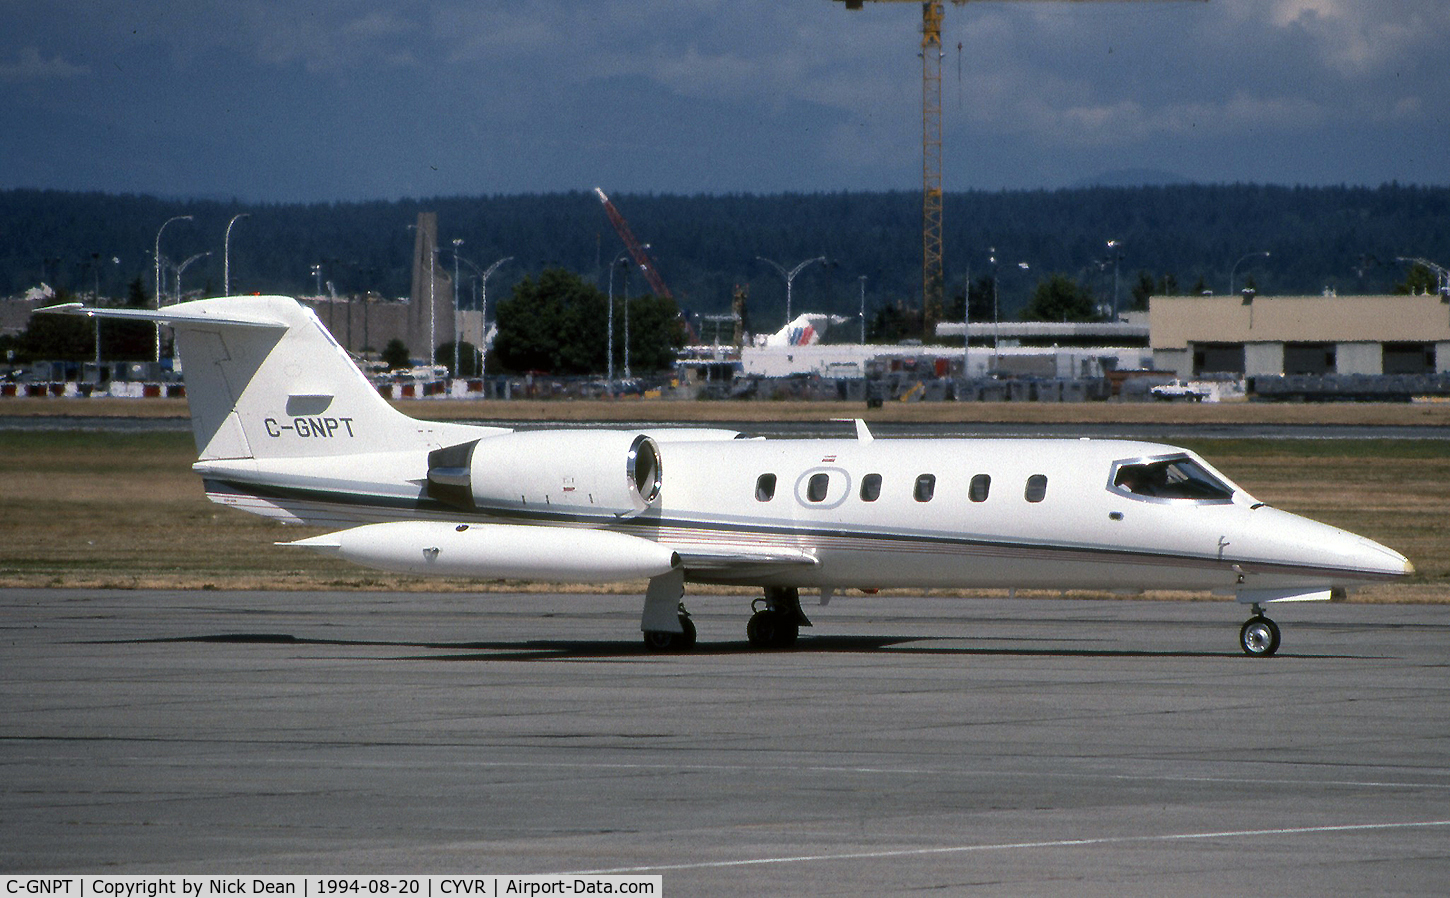 C-GNPT, 1987 Learjet 35A C/N 35A-626, CYVR